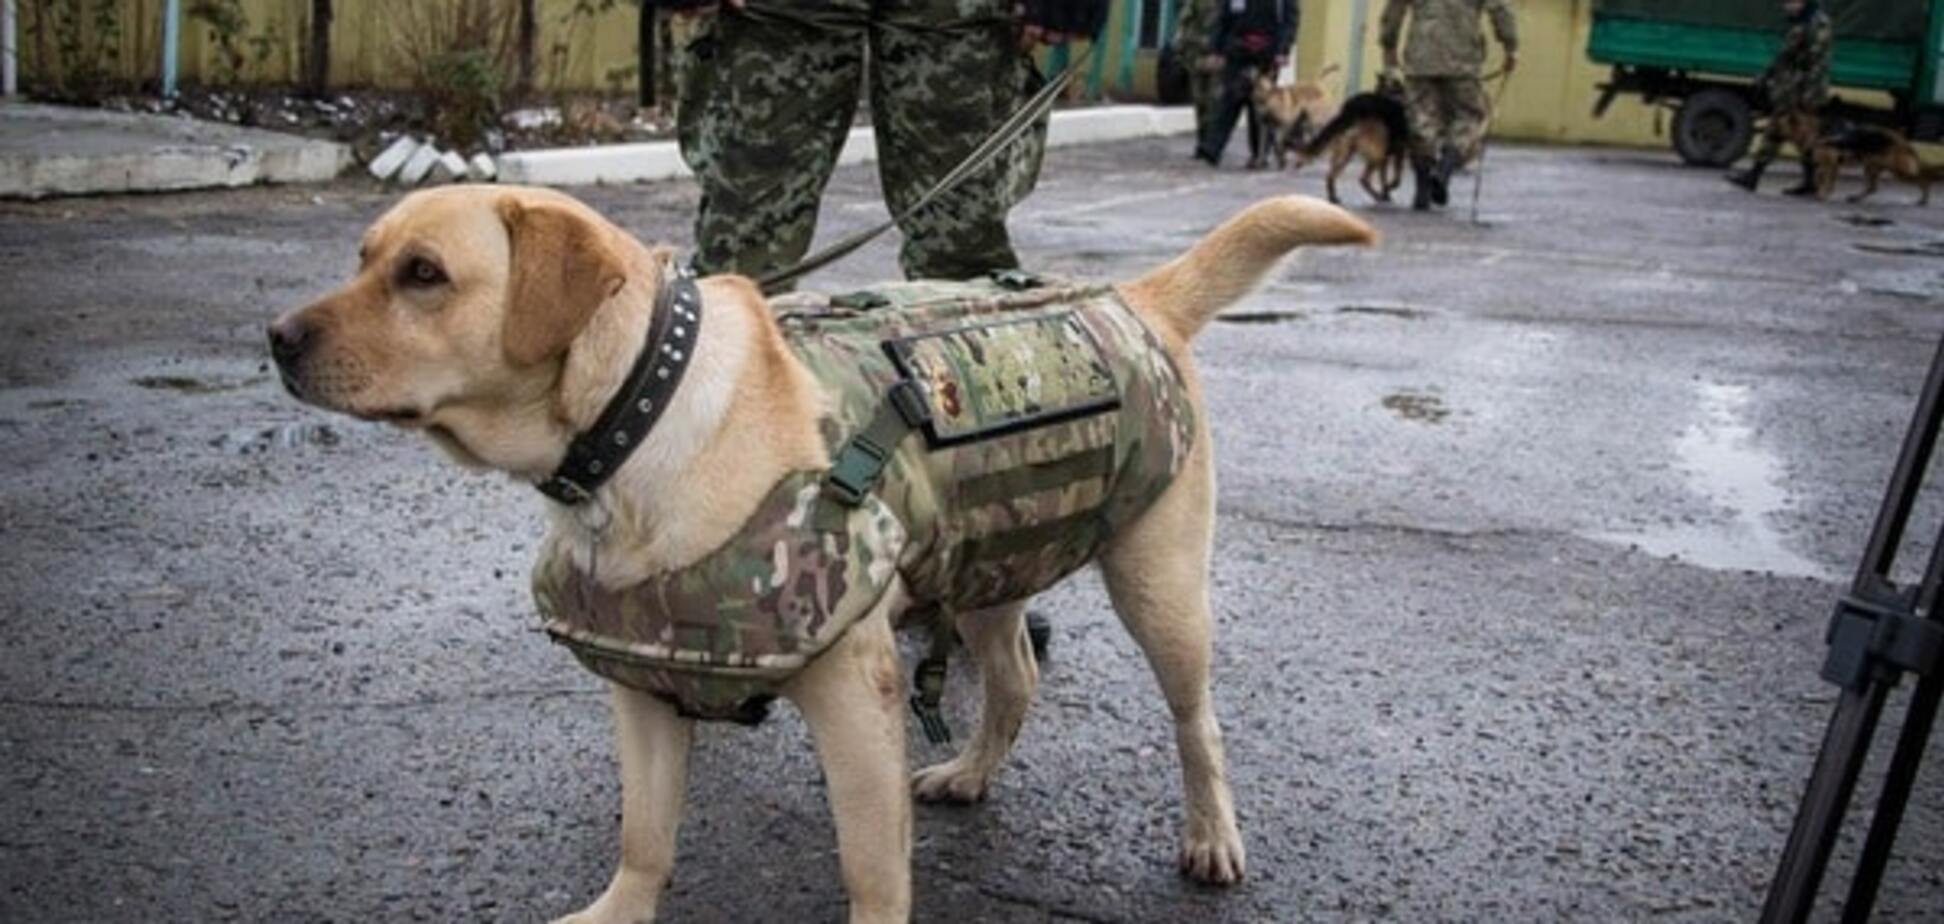 Собак прикордонників одягли в бронежилети: зворушливі фото